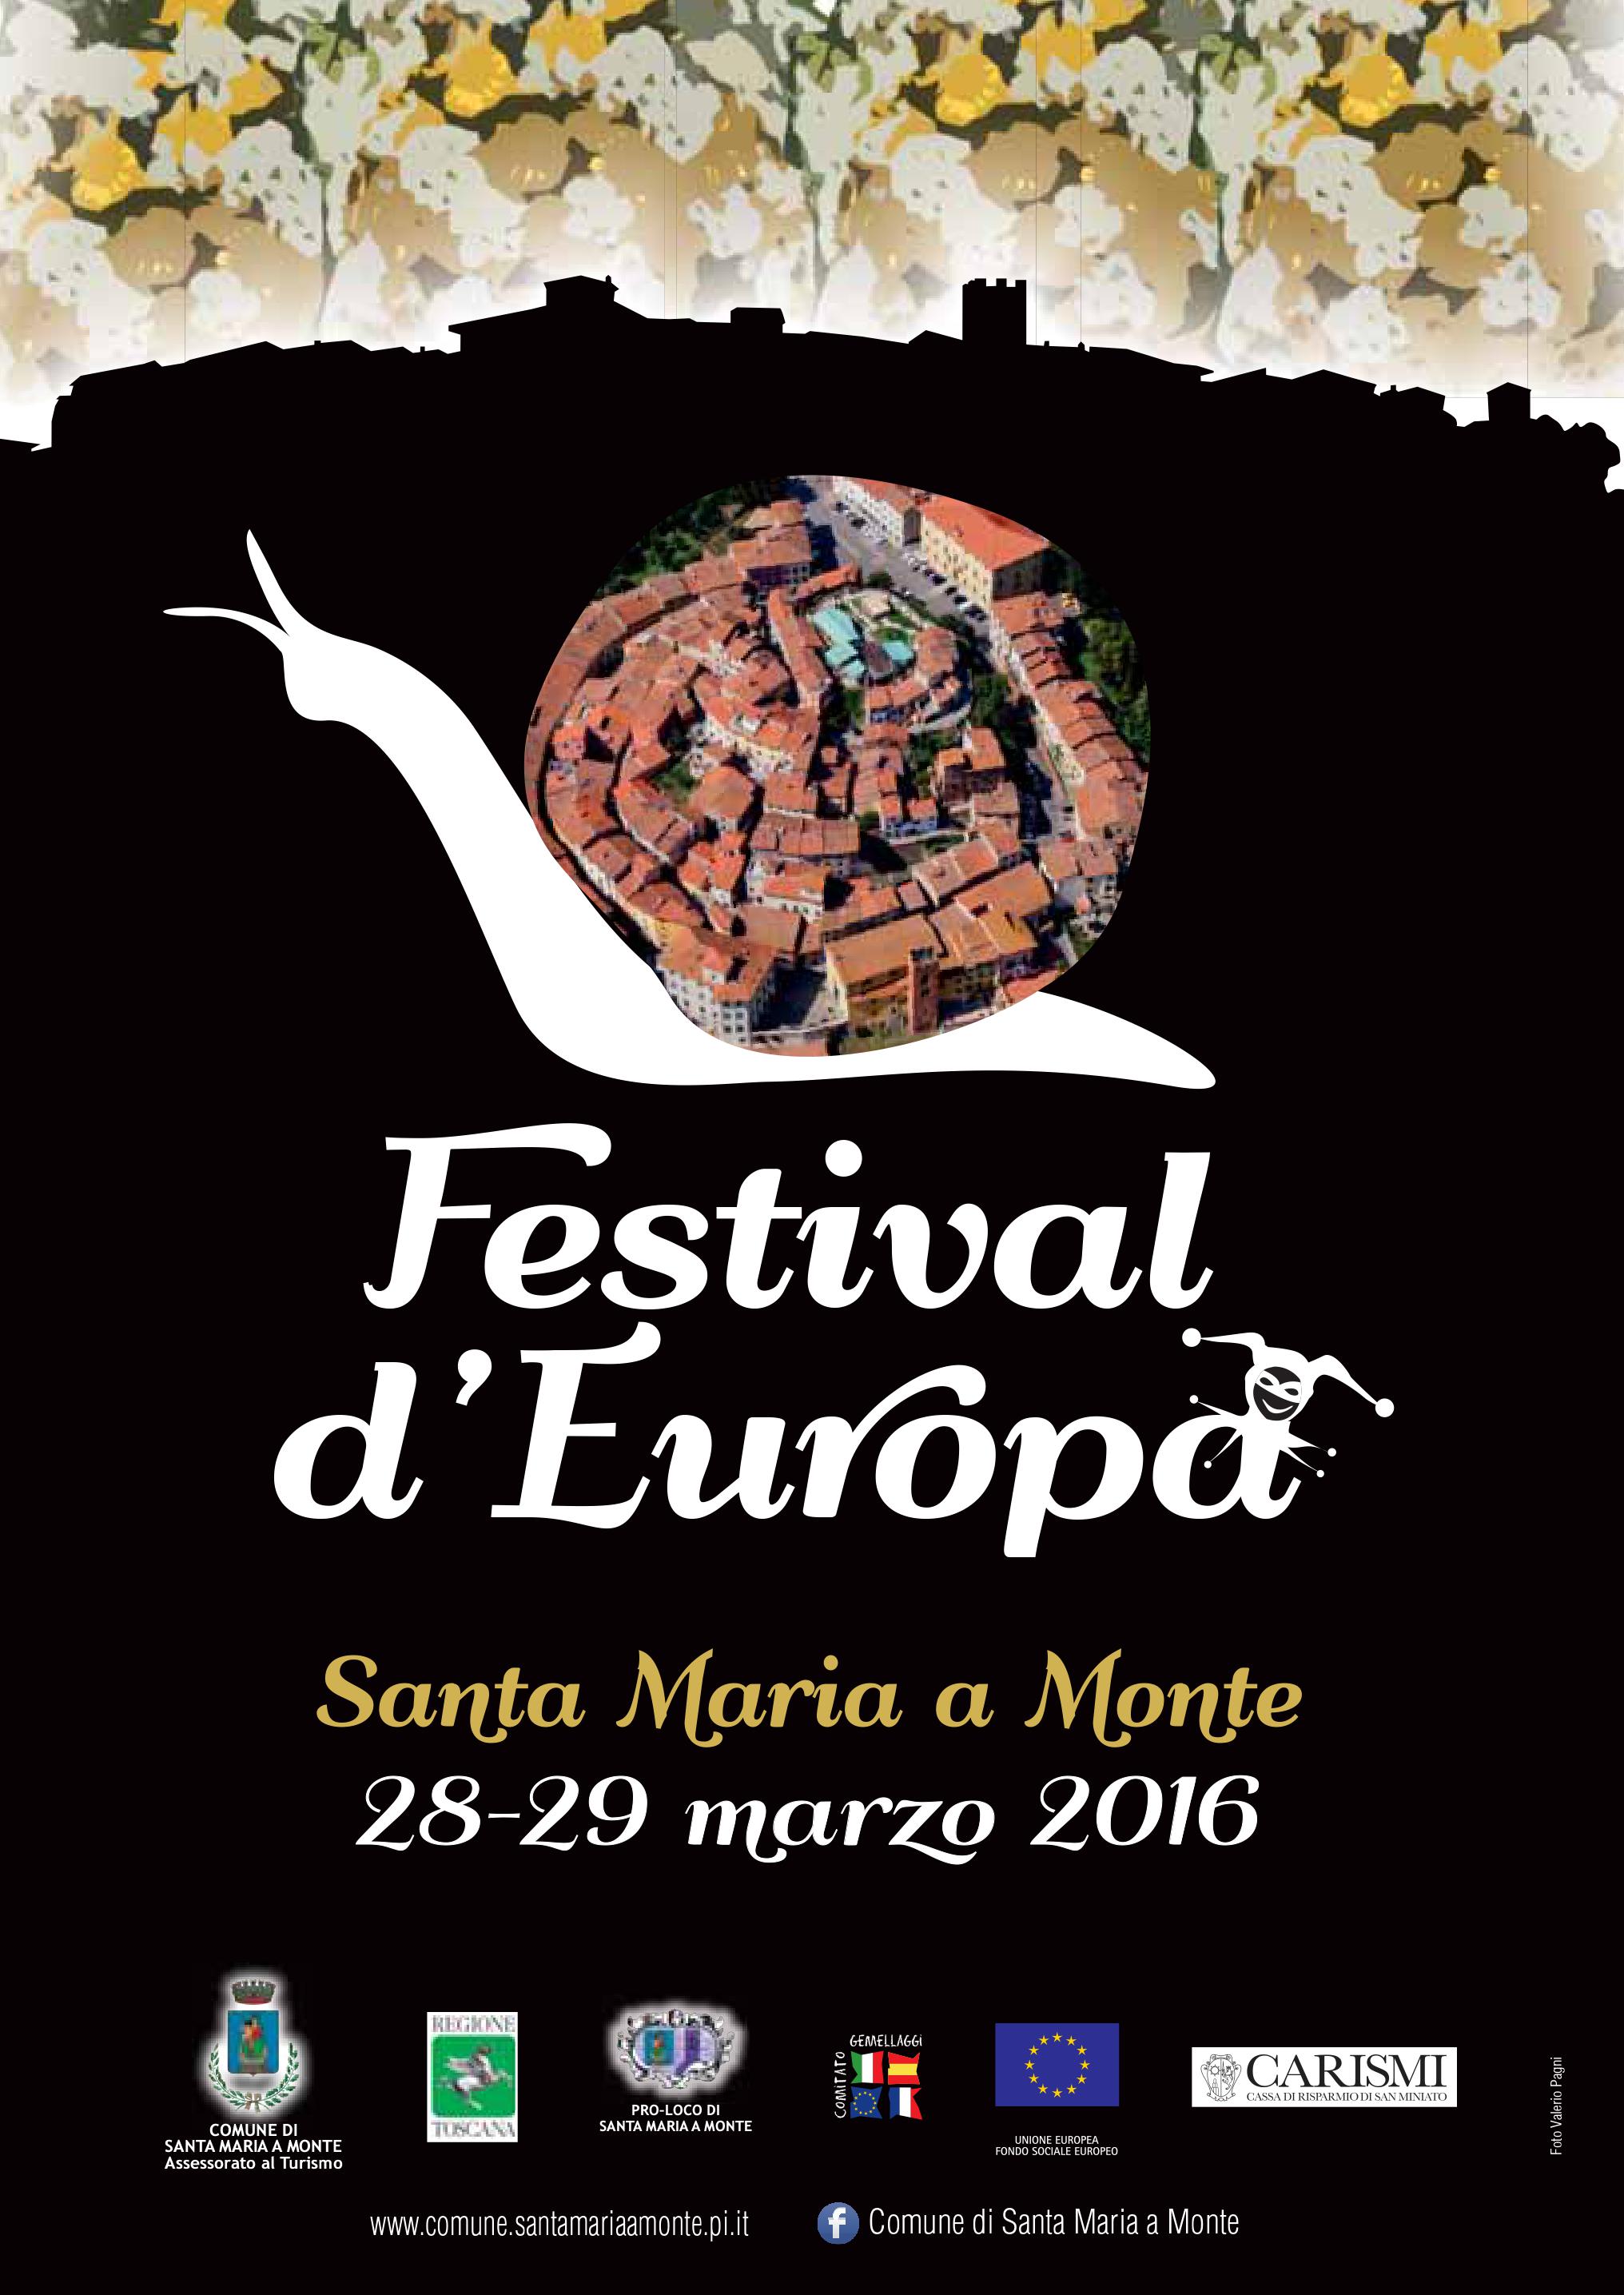 Festival d'Europa 2016 - Tutti gli eventi di martedì 29 marzo